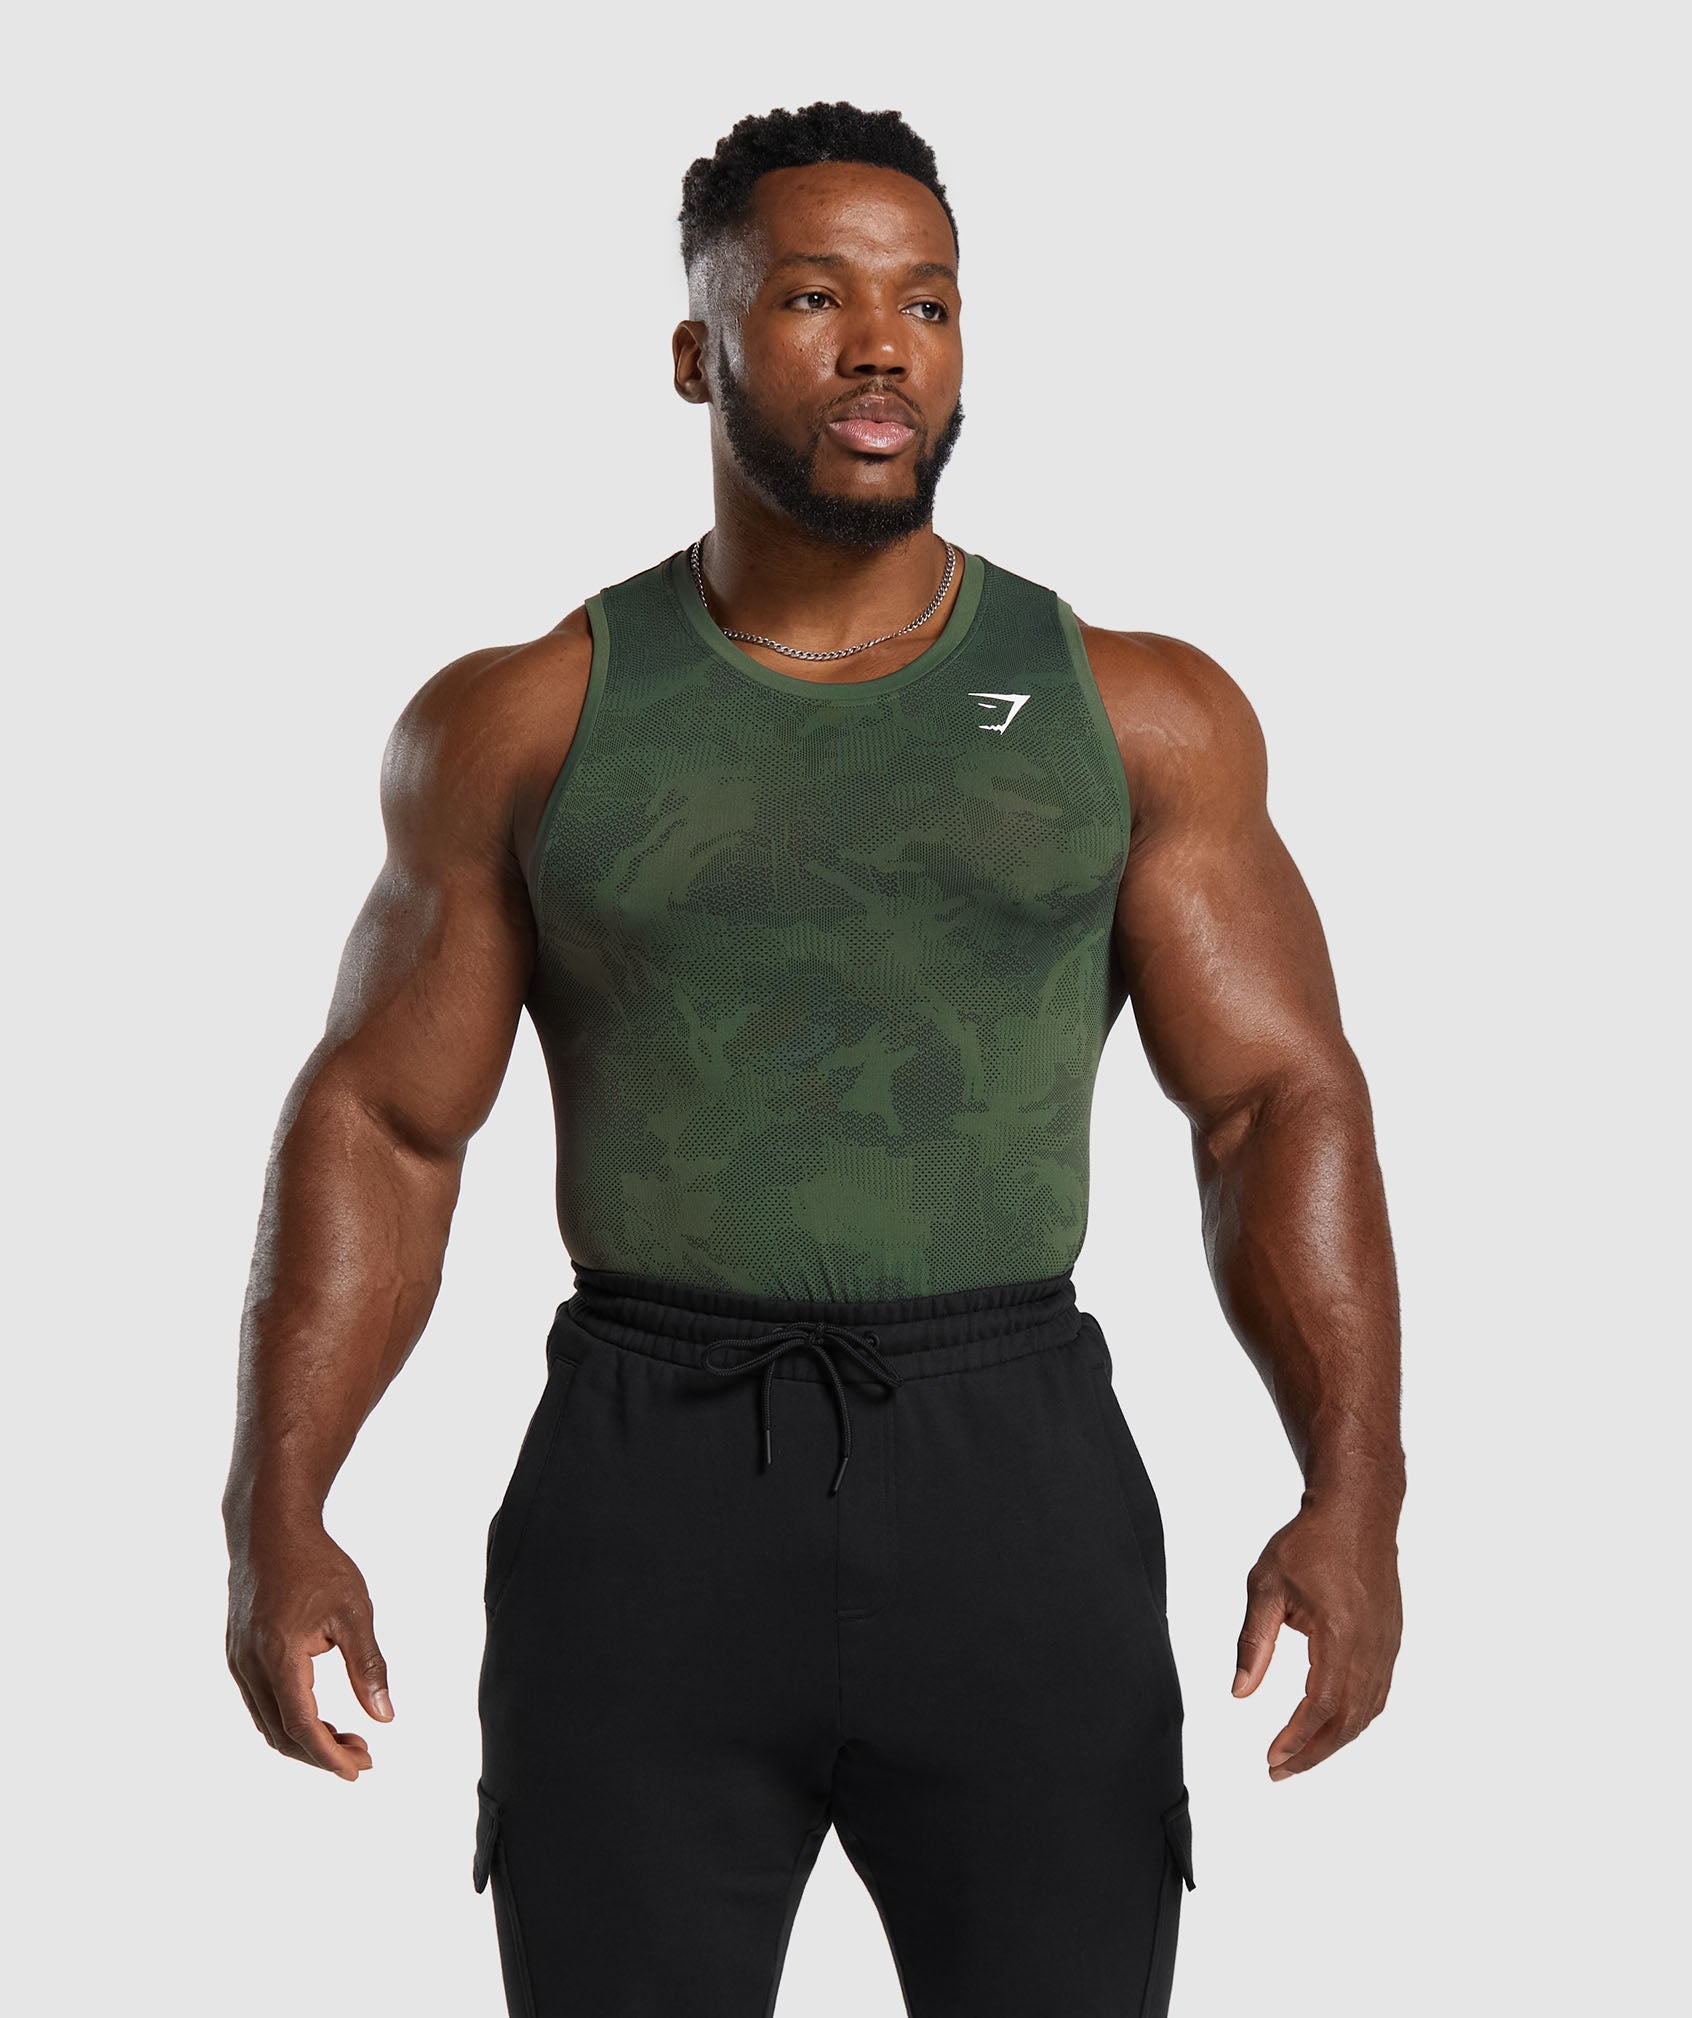 Men's 'Muscle Joe' Tank Top